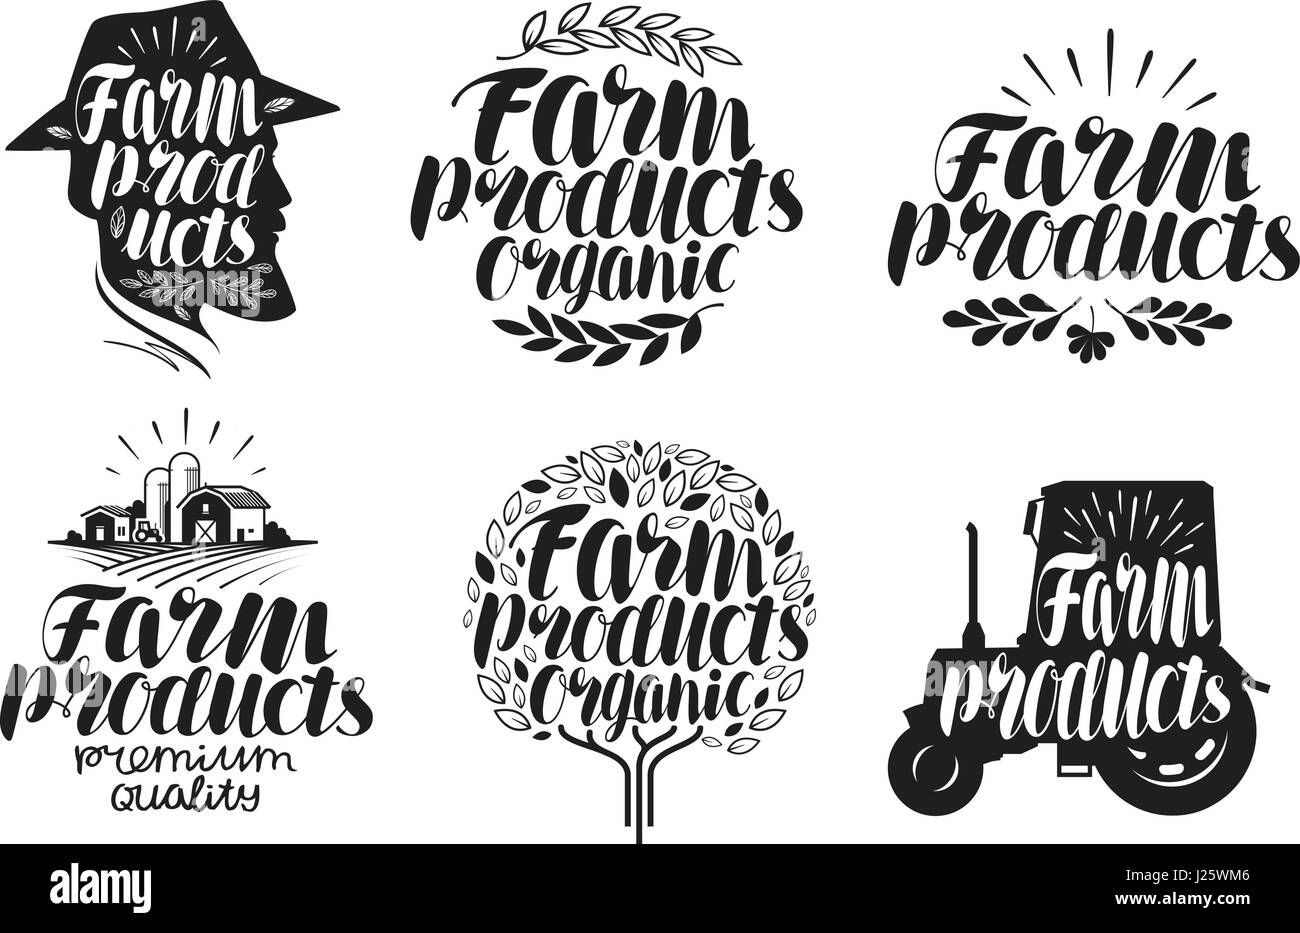 Landwirtschaftliche Produkte, Schriftzug. Landwirtschaft, Landwirtschaft, Etikett oder Logo. Kalligraphie-Vektor-illustration Stock Vektor